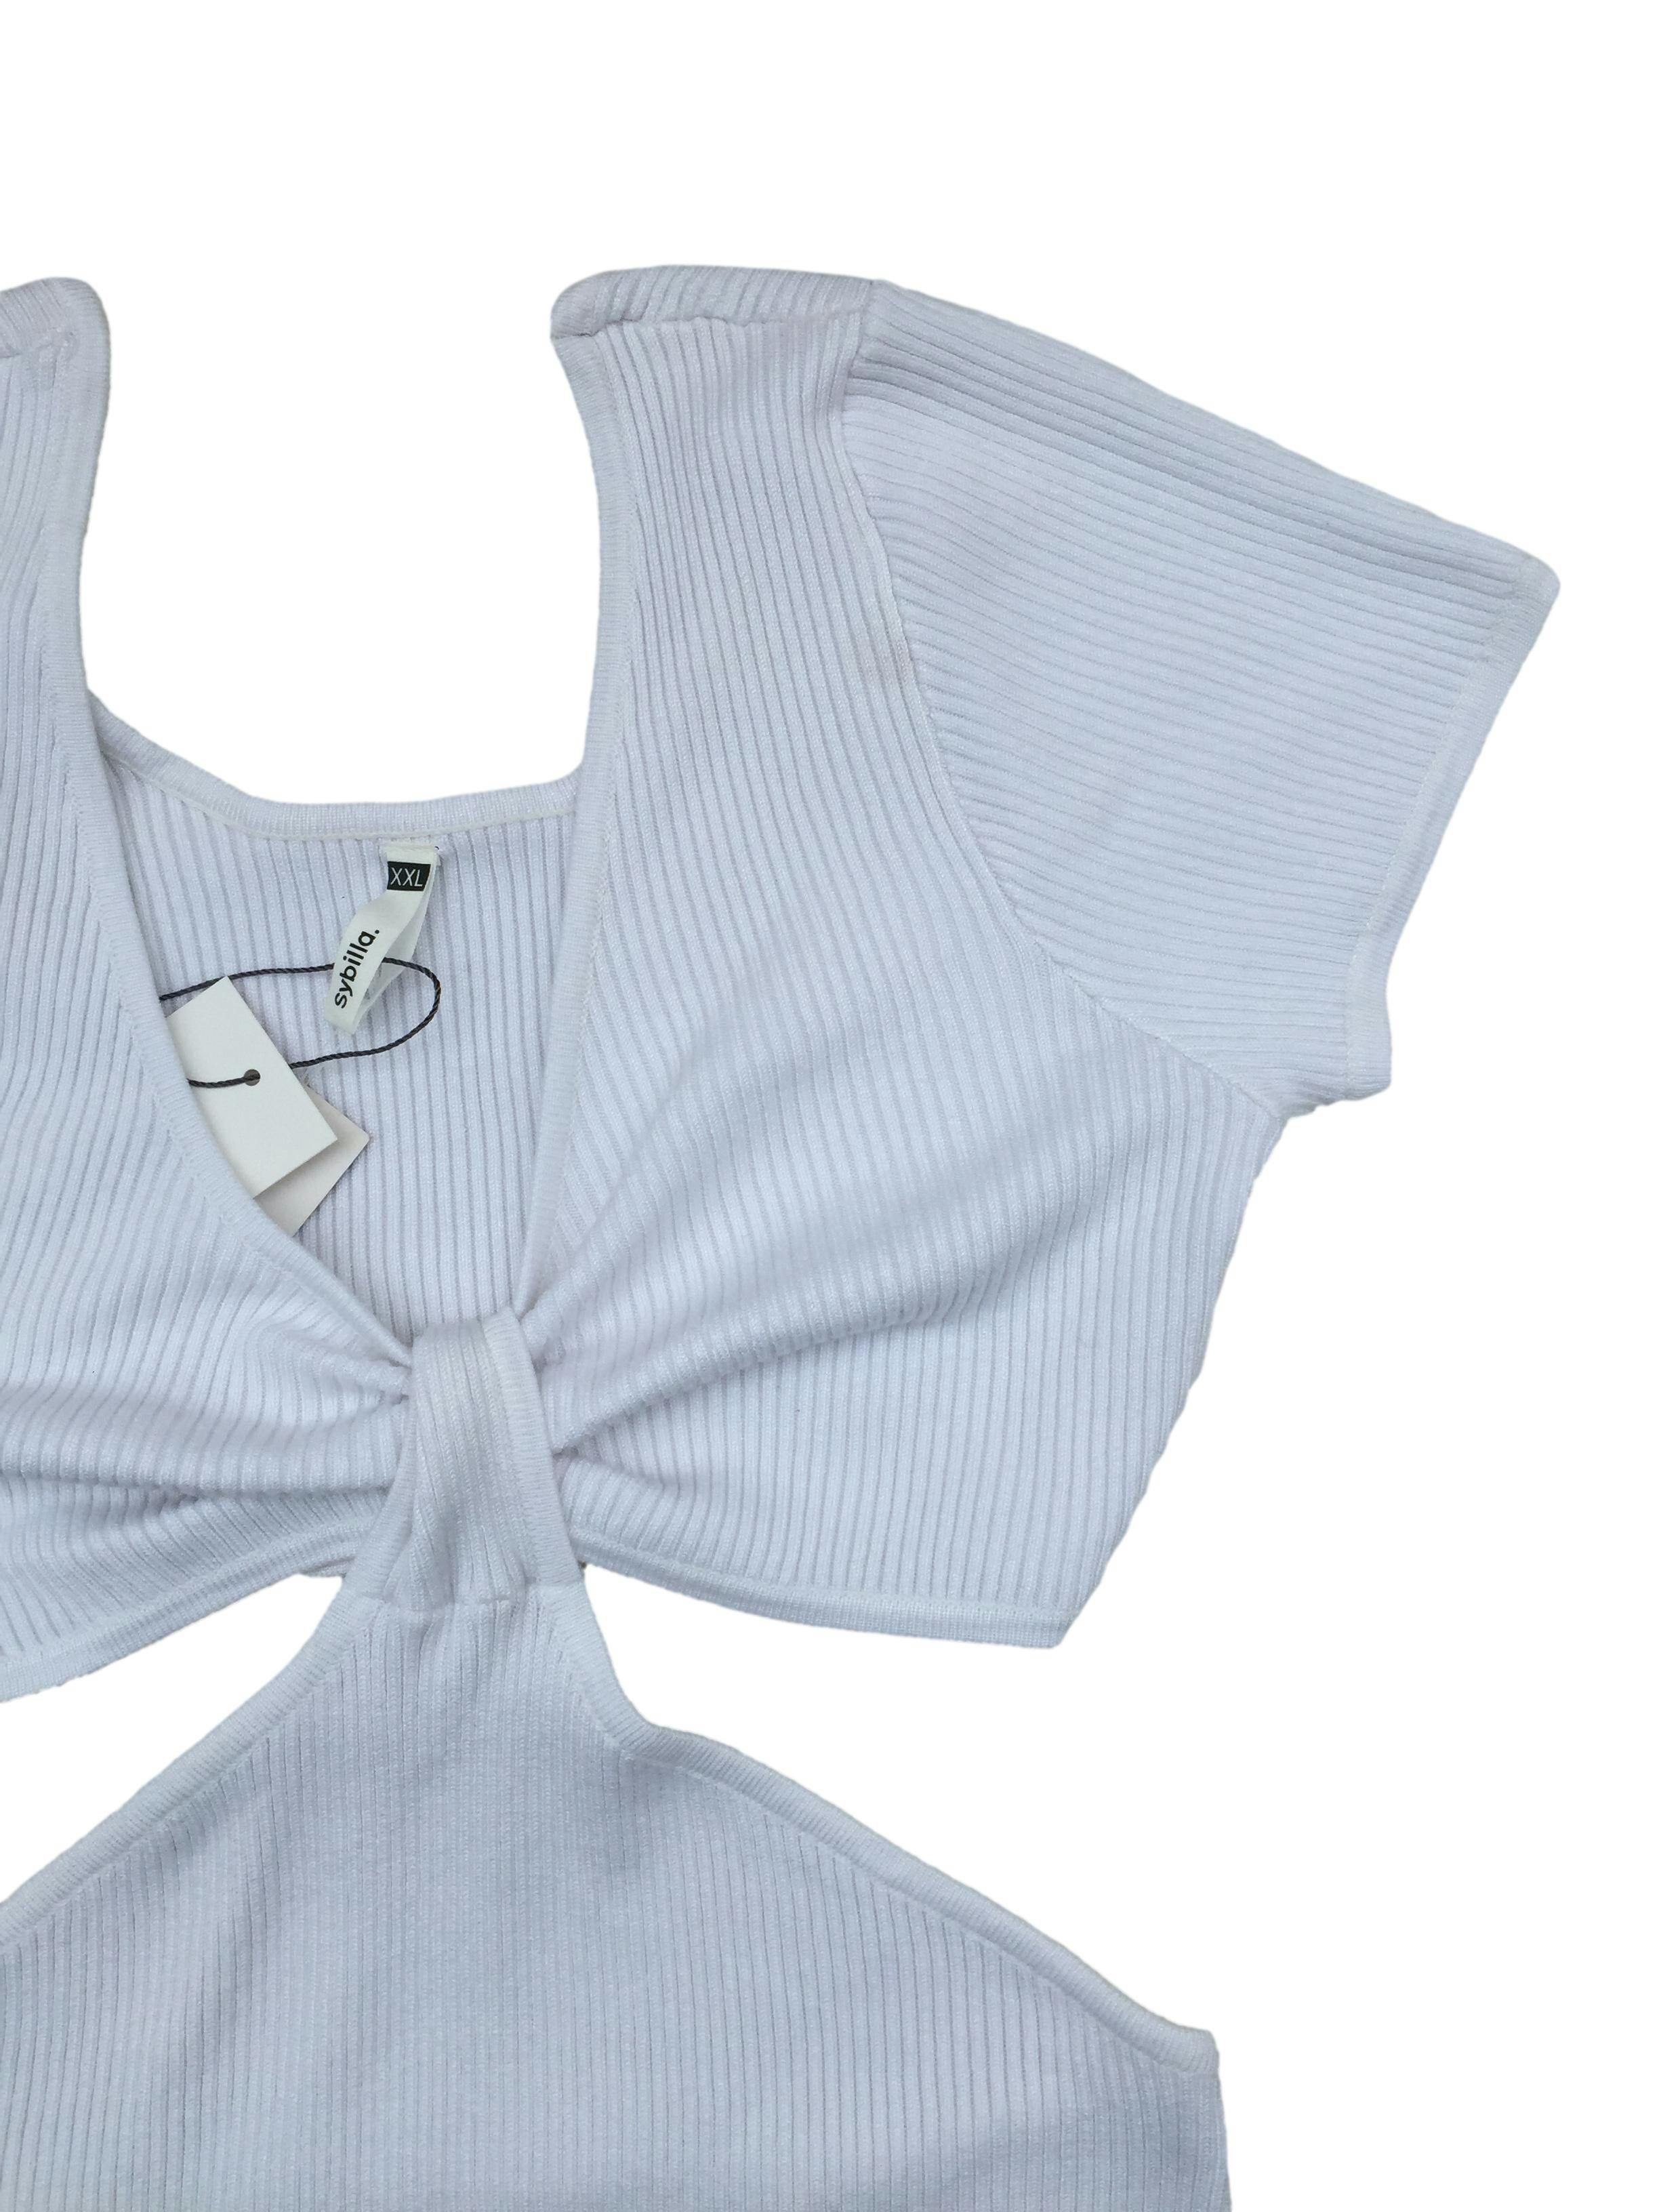 Vestido knit Sybilla, tejido blanco stretch con textura acanalada, laterales y espalda descubierta. Nuevo con etiqueta. Busto 96cm sin estirar, Largo 90cm.